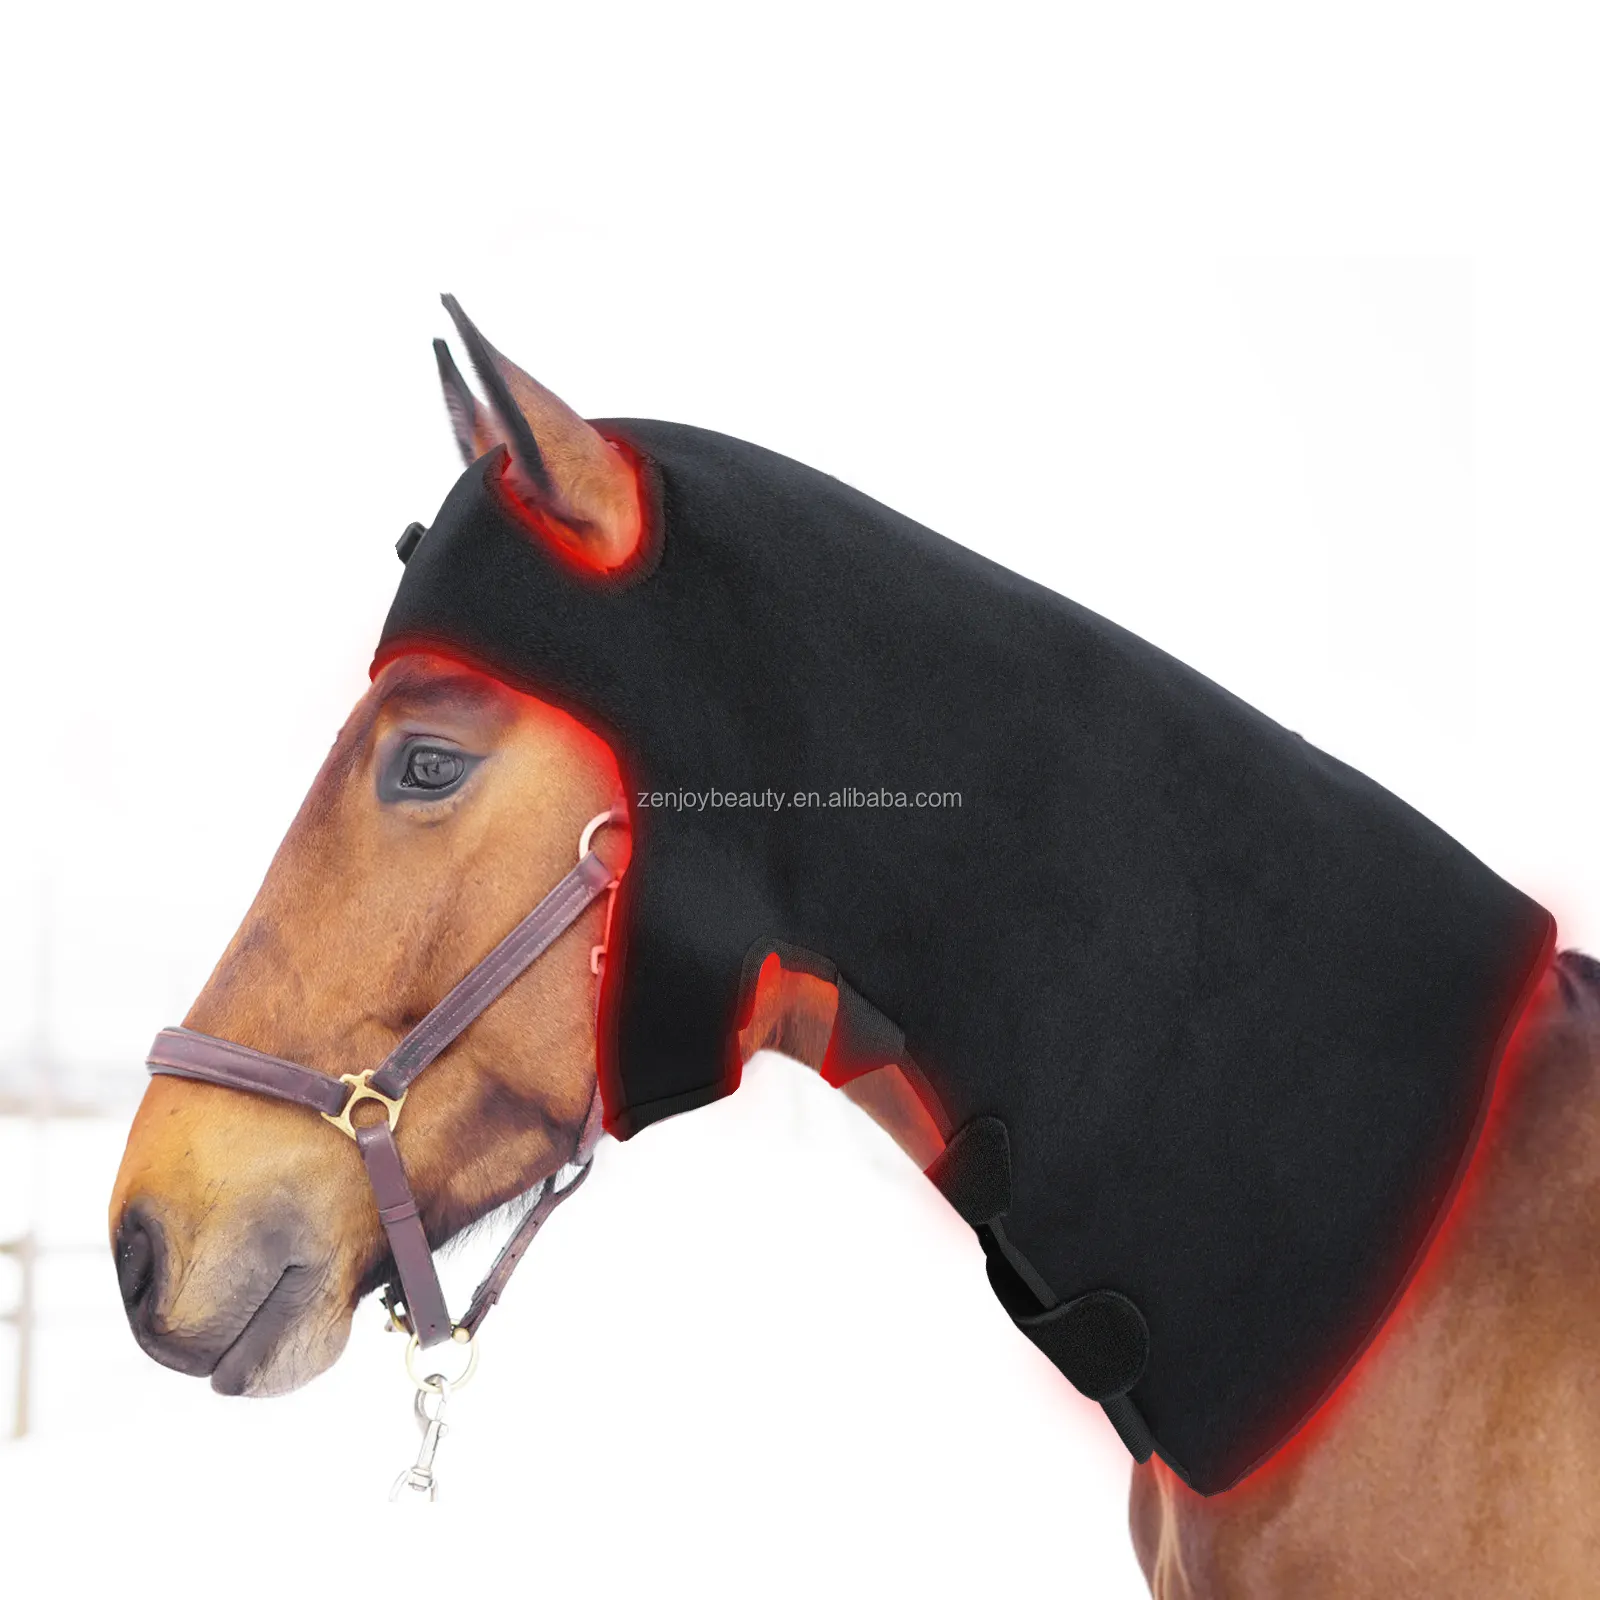 غطاء رقبة الحصان المُعالج بالضوء LED للتخفيف من الألم، وسادة عمودية قياسية لحماية الرقبة عند الحصان طول موجي 660 نانومتر 850 نانومتر لفّافة علاجية بالضوء بالأشعة تحت الحمراء